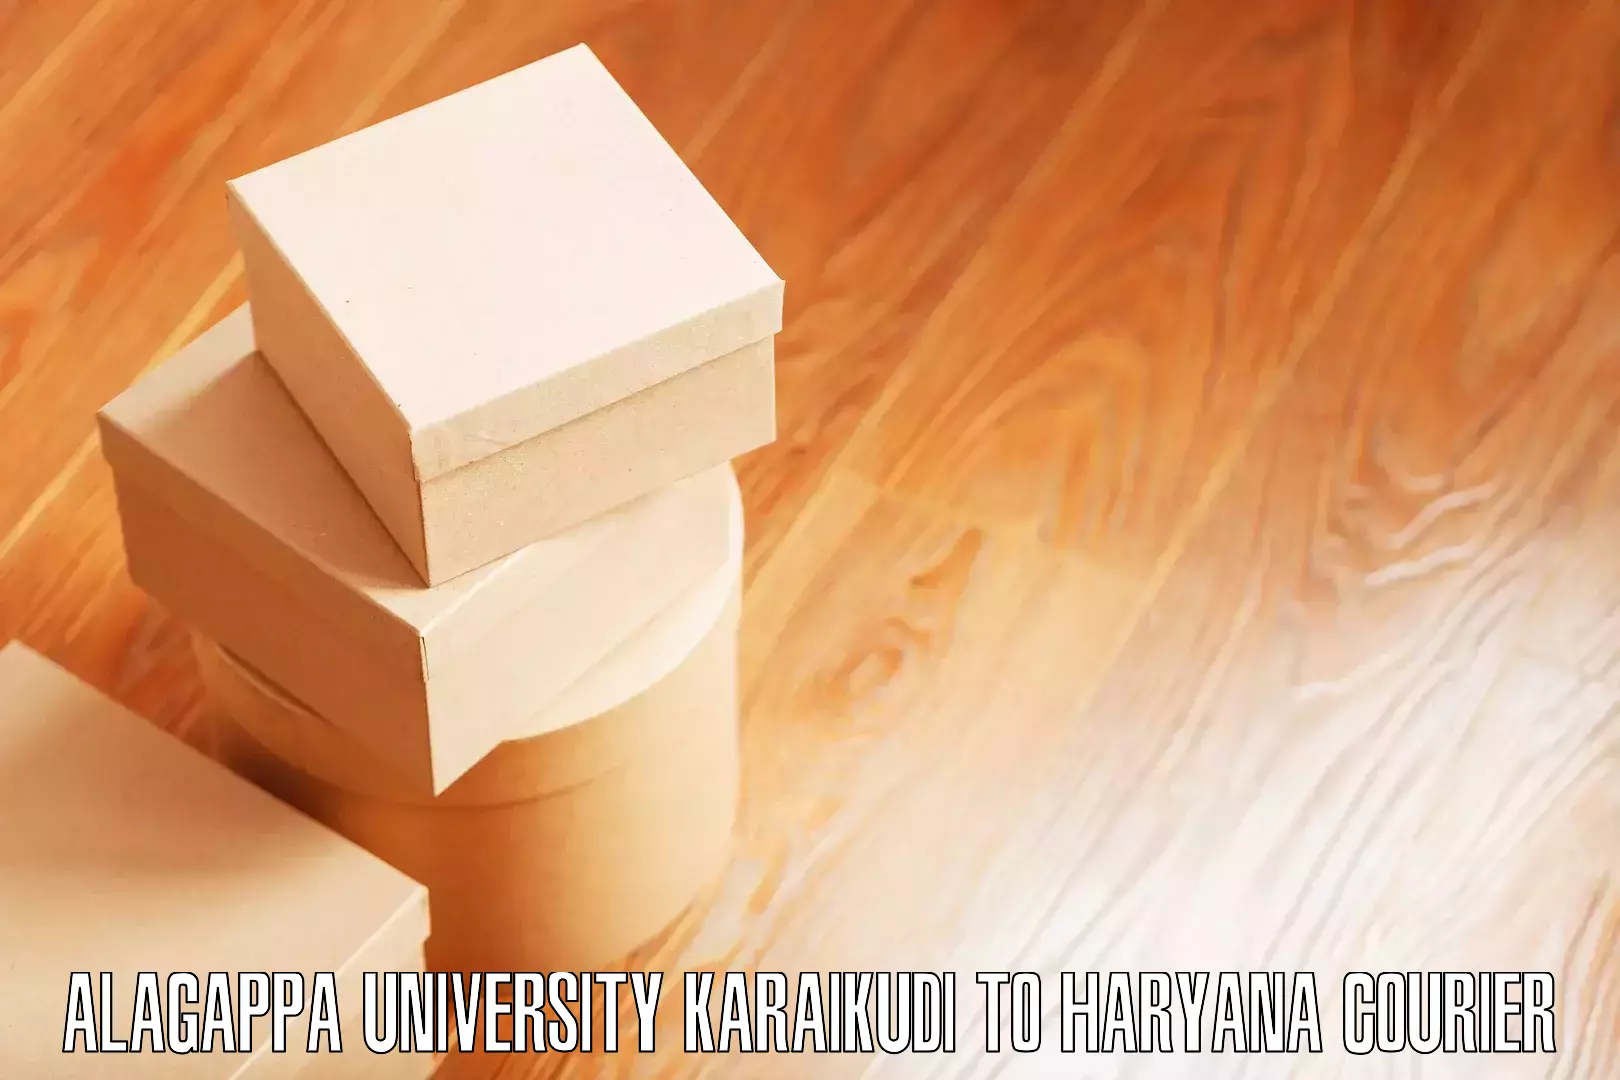 Furniture moving experts Alagappa University Karaikudi to Assandh